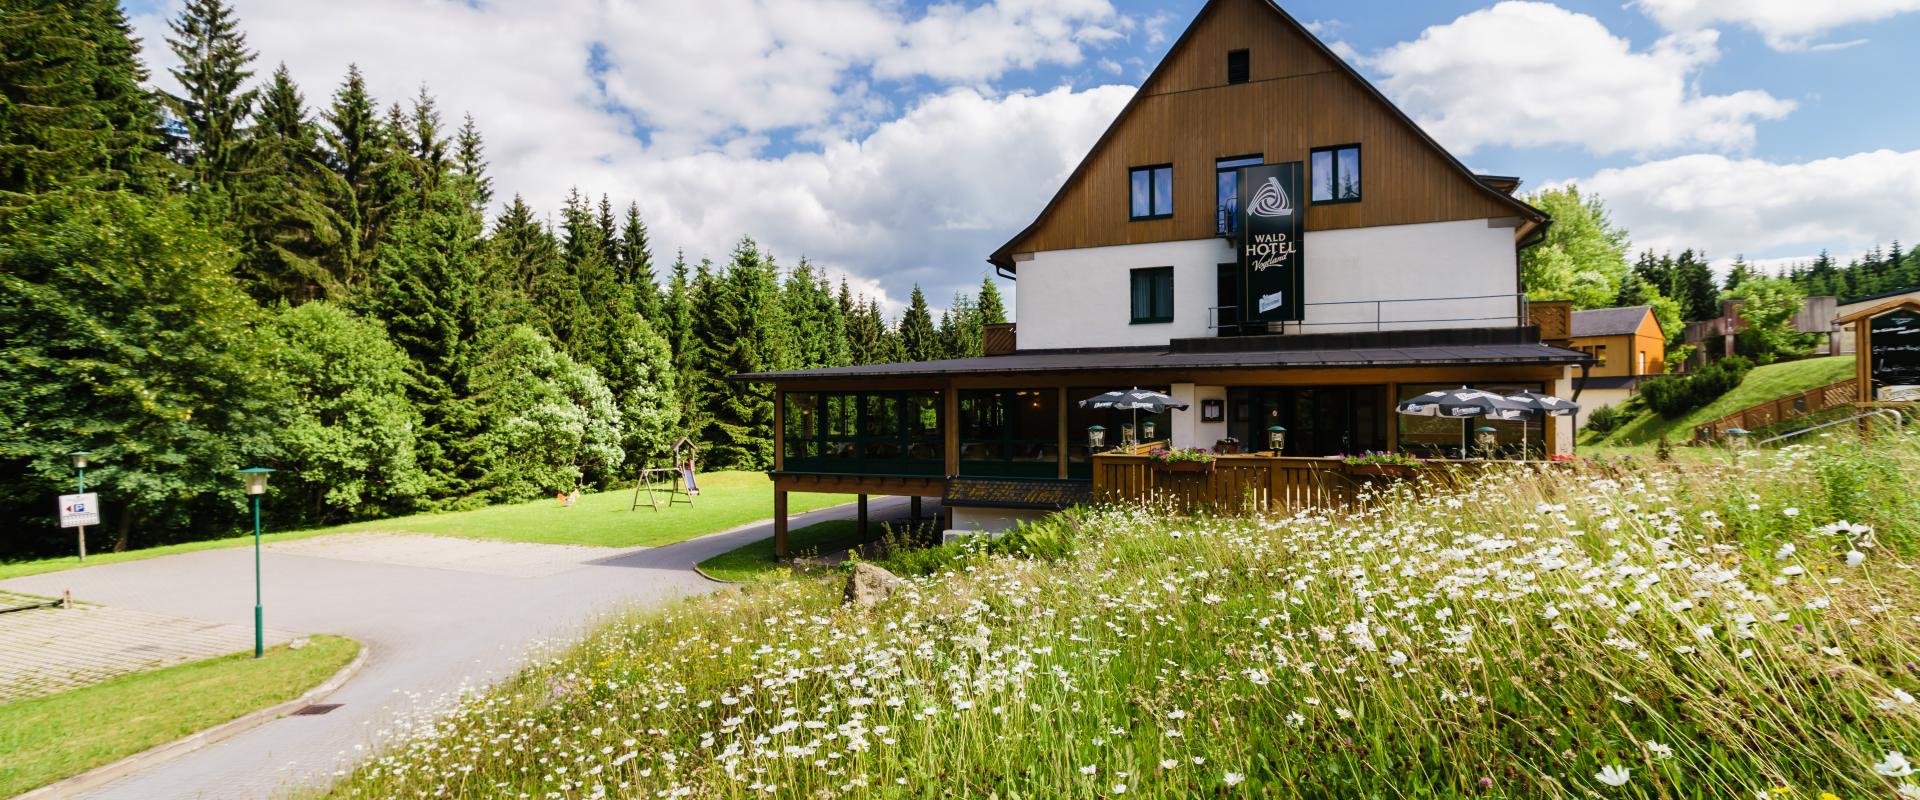 11095 Biker Hotel Vogtland im Erzgebirge.jpg